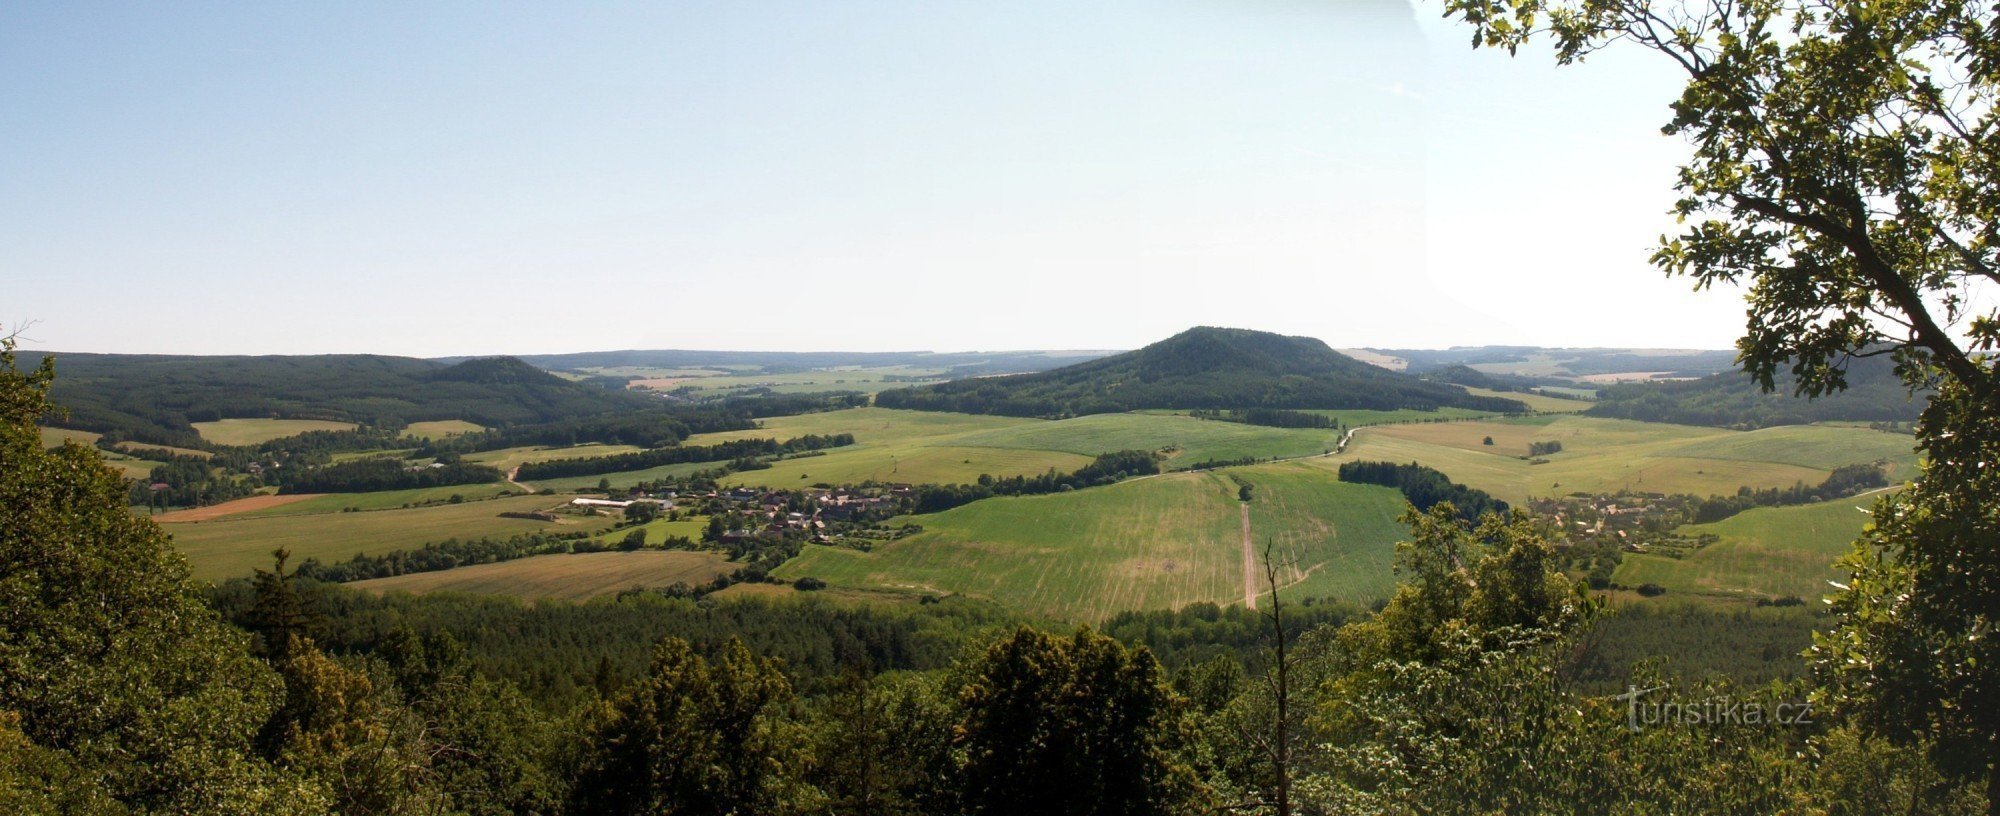 Άποψη από την άποψη της περιοχής Manětín